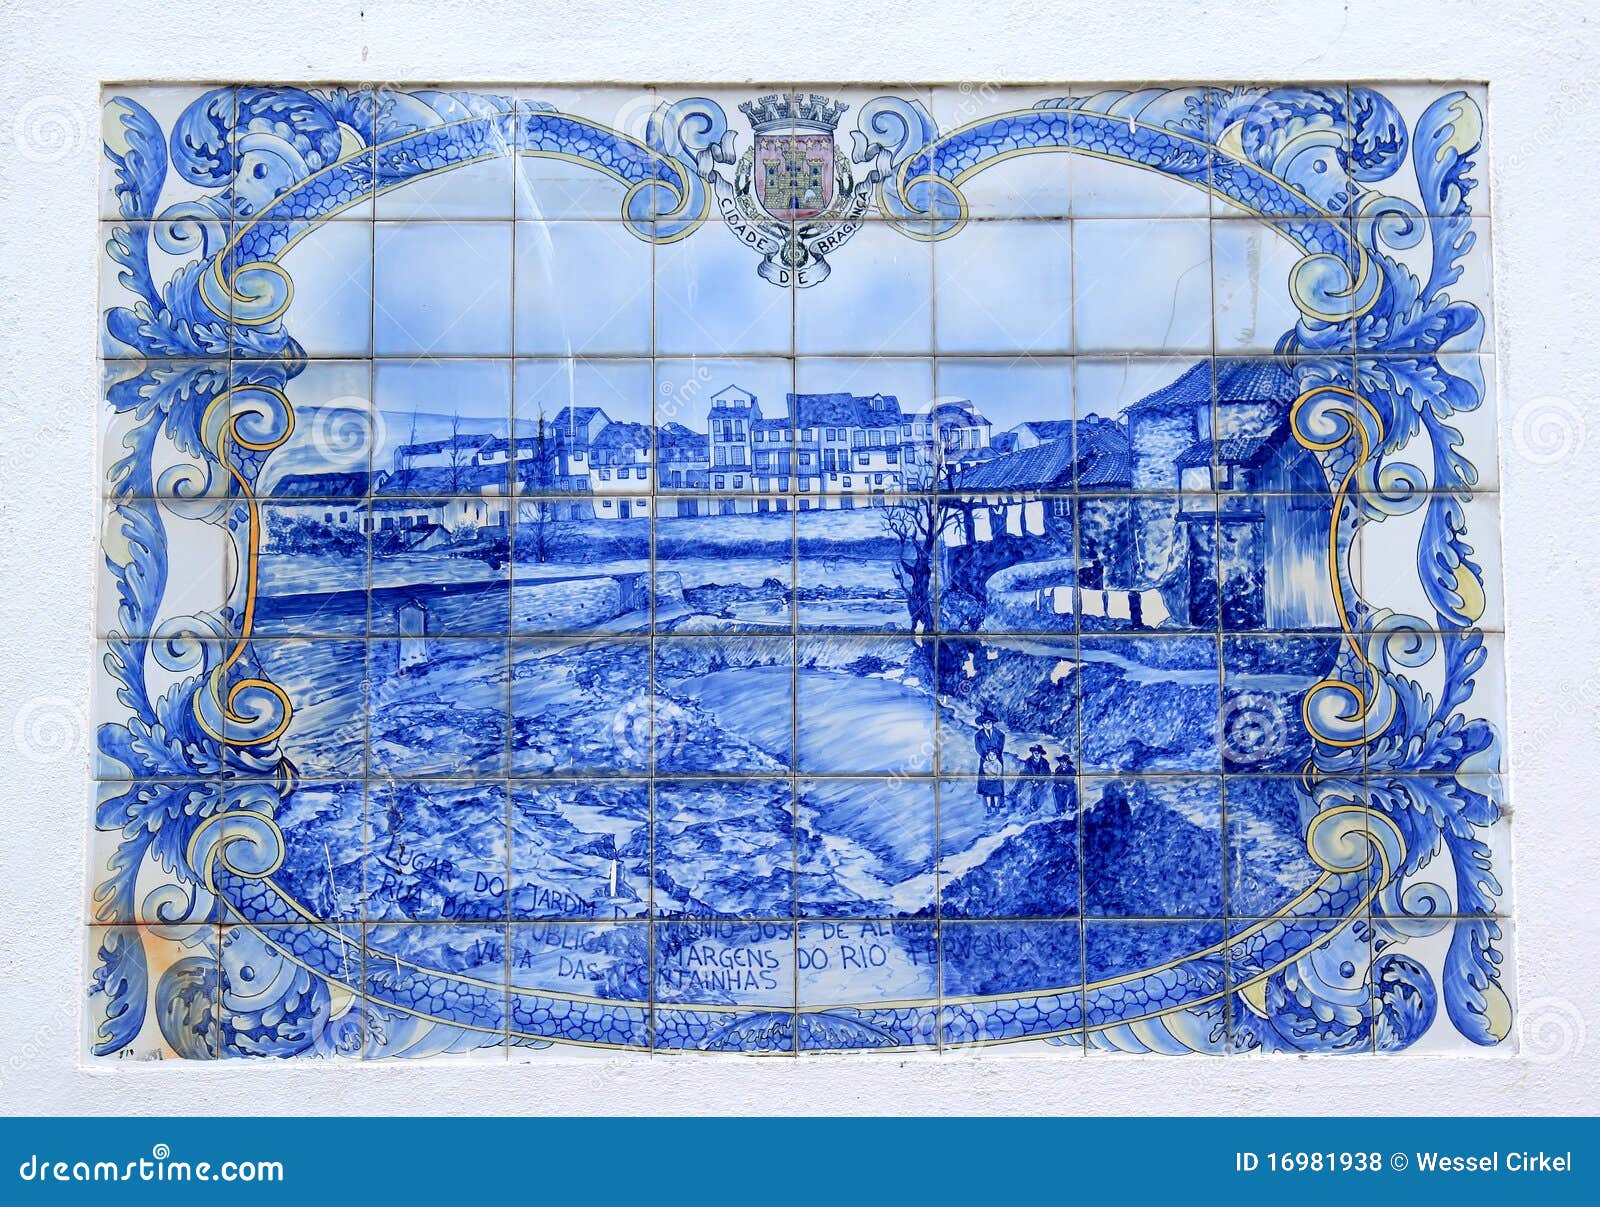 portuguese azulejo of the town of braganca